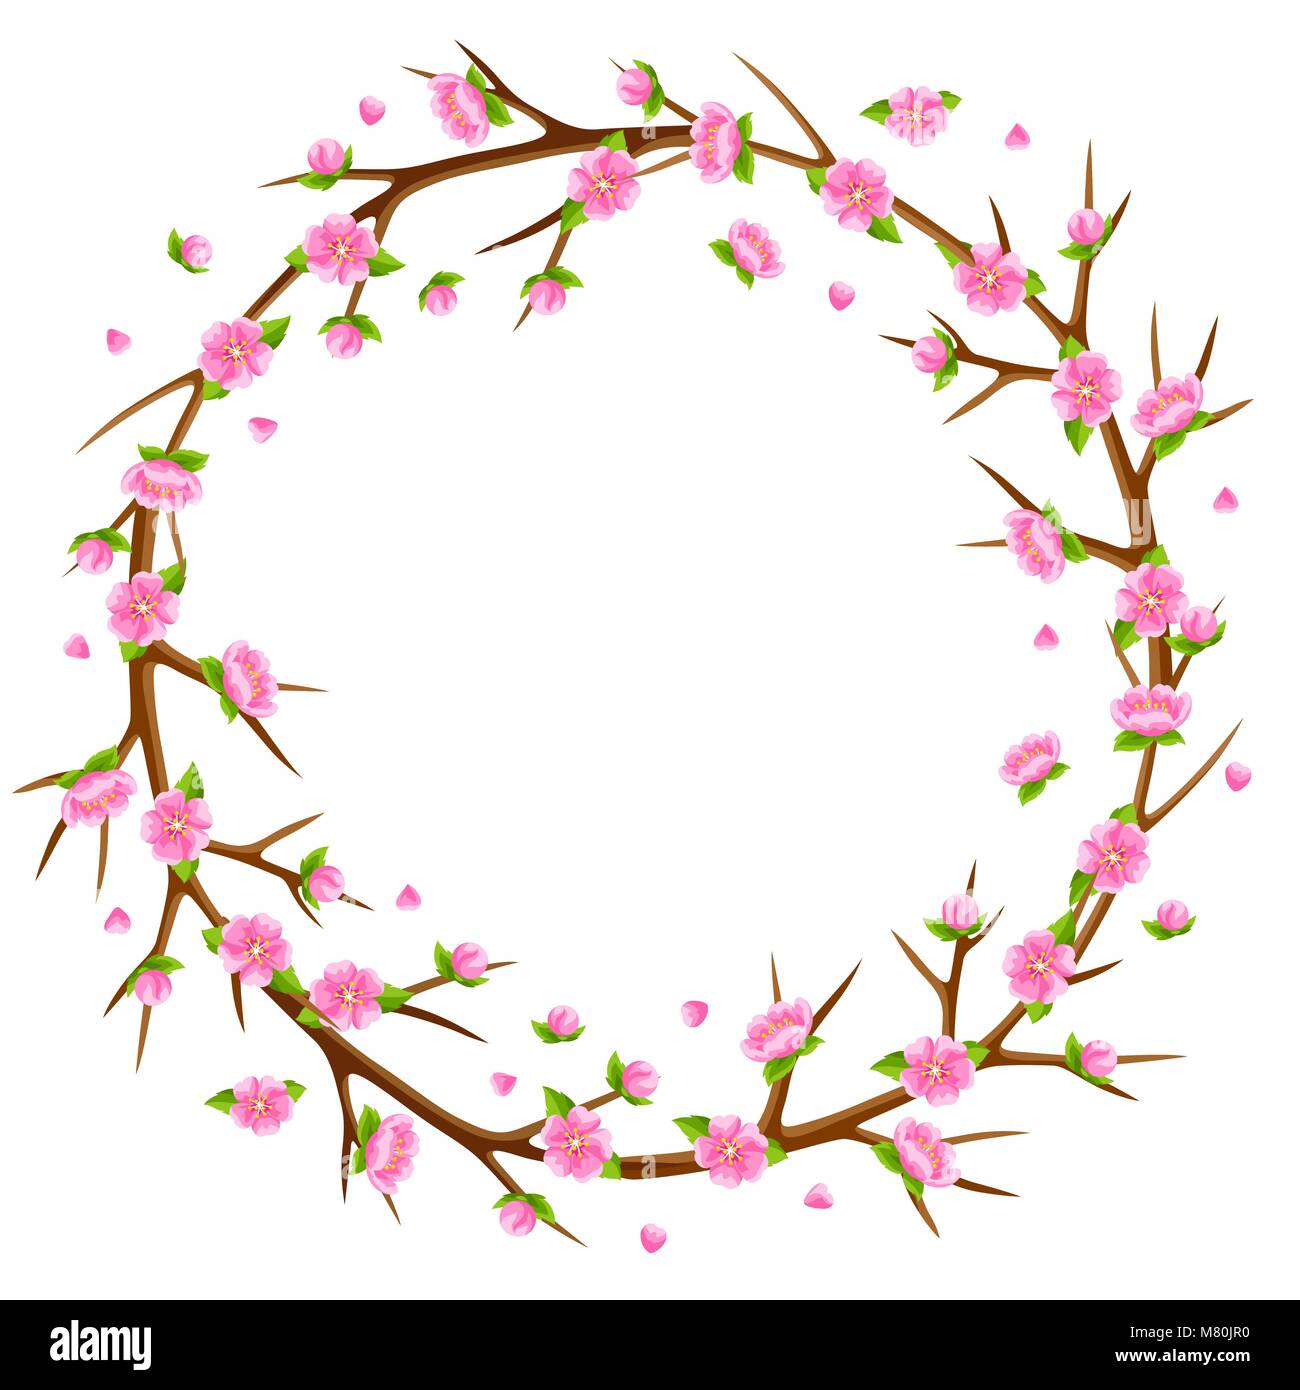 Printemps cadre avec des branches d'arbre et sakura fleurs. Illustration de saison Illustration de Vecteur